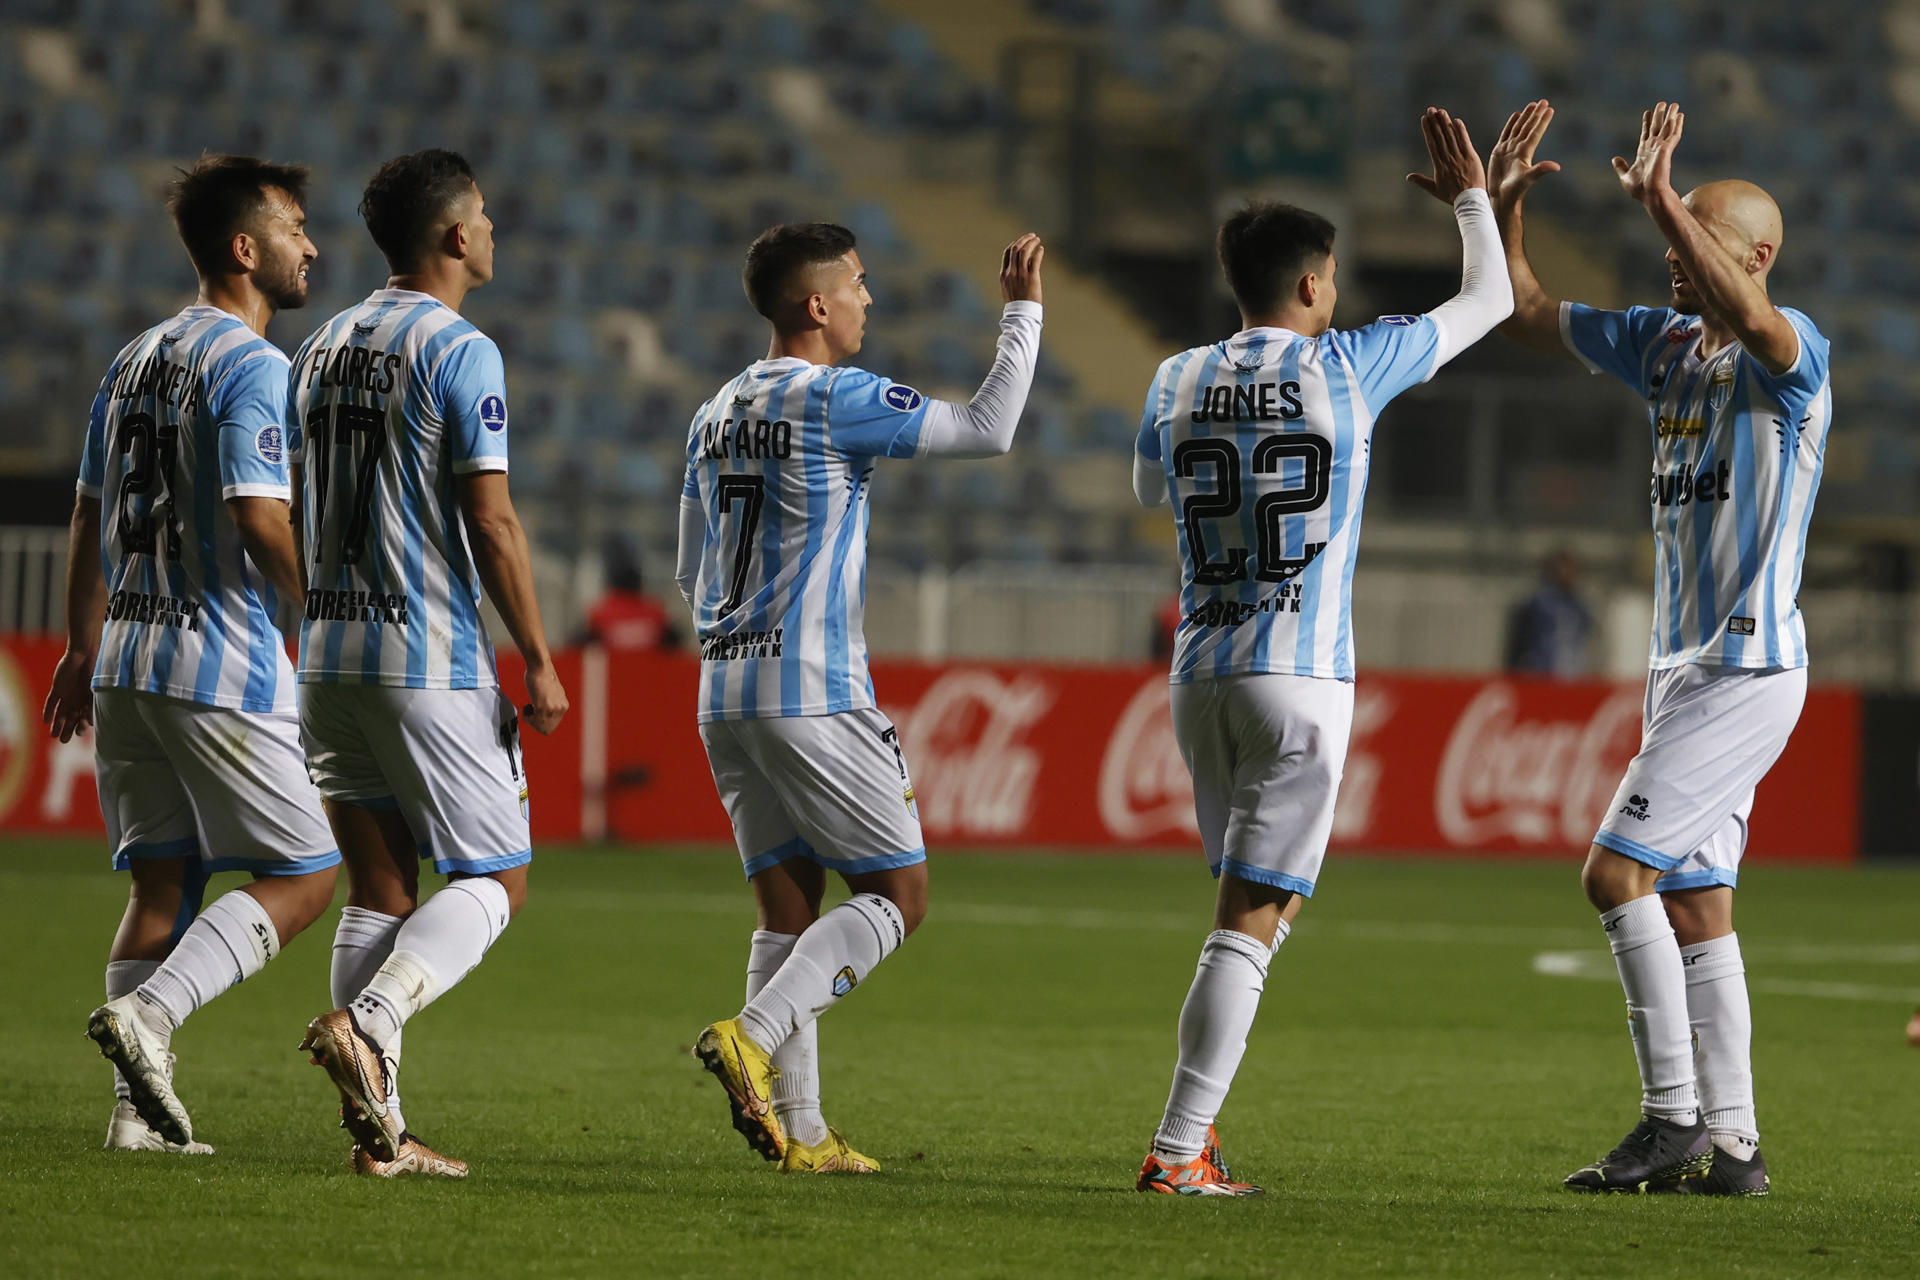 Jugadores del Magallanes de Chile fueron registrados este martes, 2 de mayo, al celebrar un gol que le anotaron a la Universidad César Vallejo de Perú, durante un partido del grupo A de la Copa Sudamericana, en el estadio El Teniente, en Rancagua (Chile). EFE/Elvis González